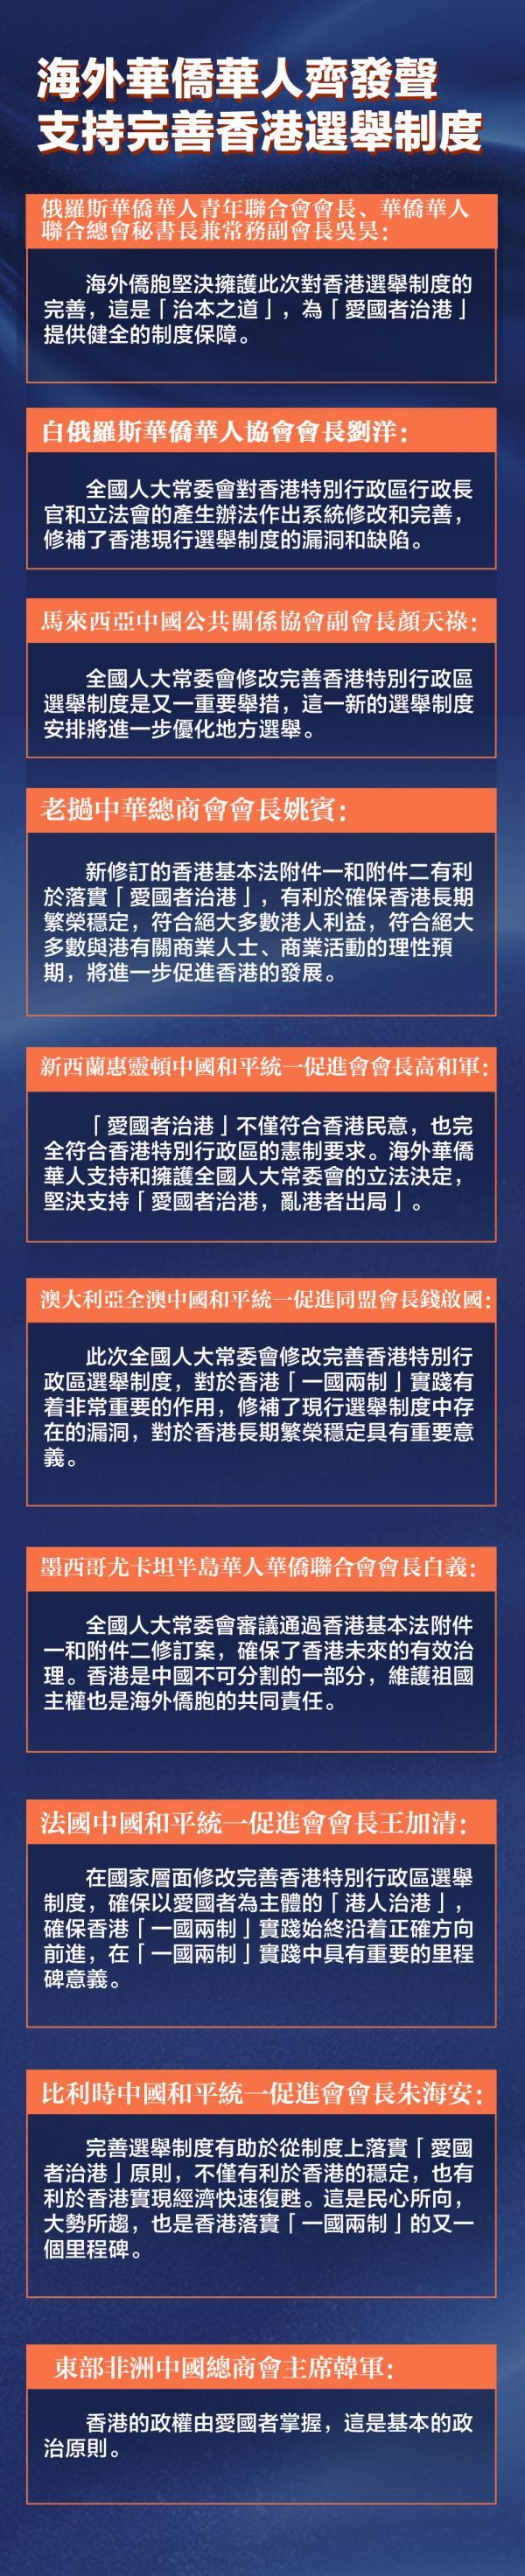 海外華僑華人齊發聲 支持完善香港選舉制度